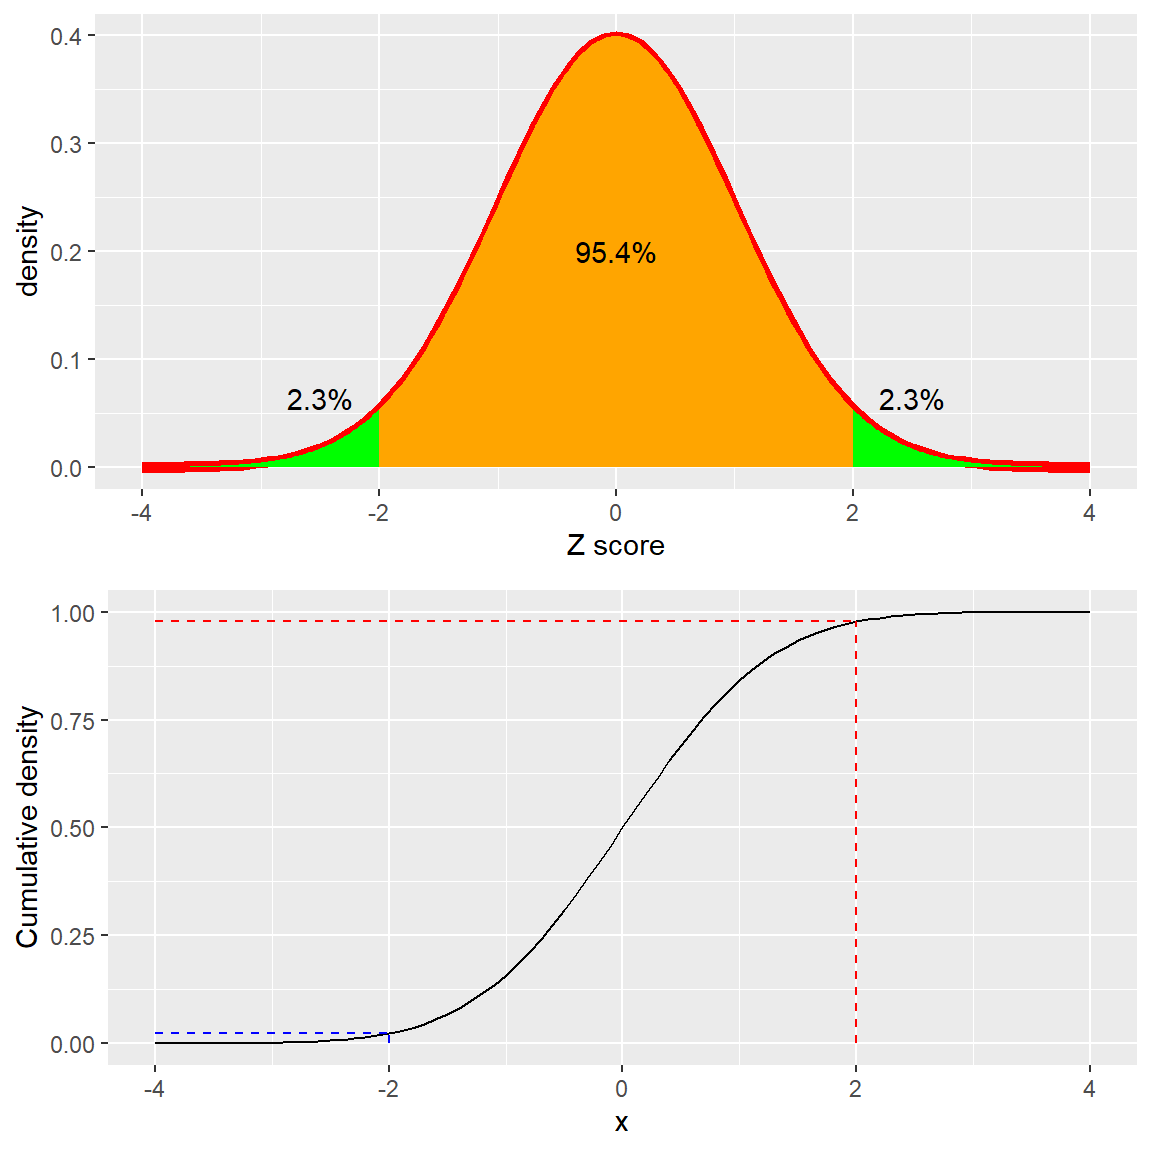 Distribución de densidad (arriba) y acumulada (abajo) de una distribución normal estándar, con puntos de corte (cutoffs) marcados a dos desviaciones estándar arriba/abajo de la media.